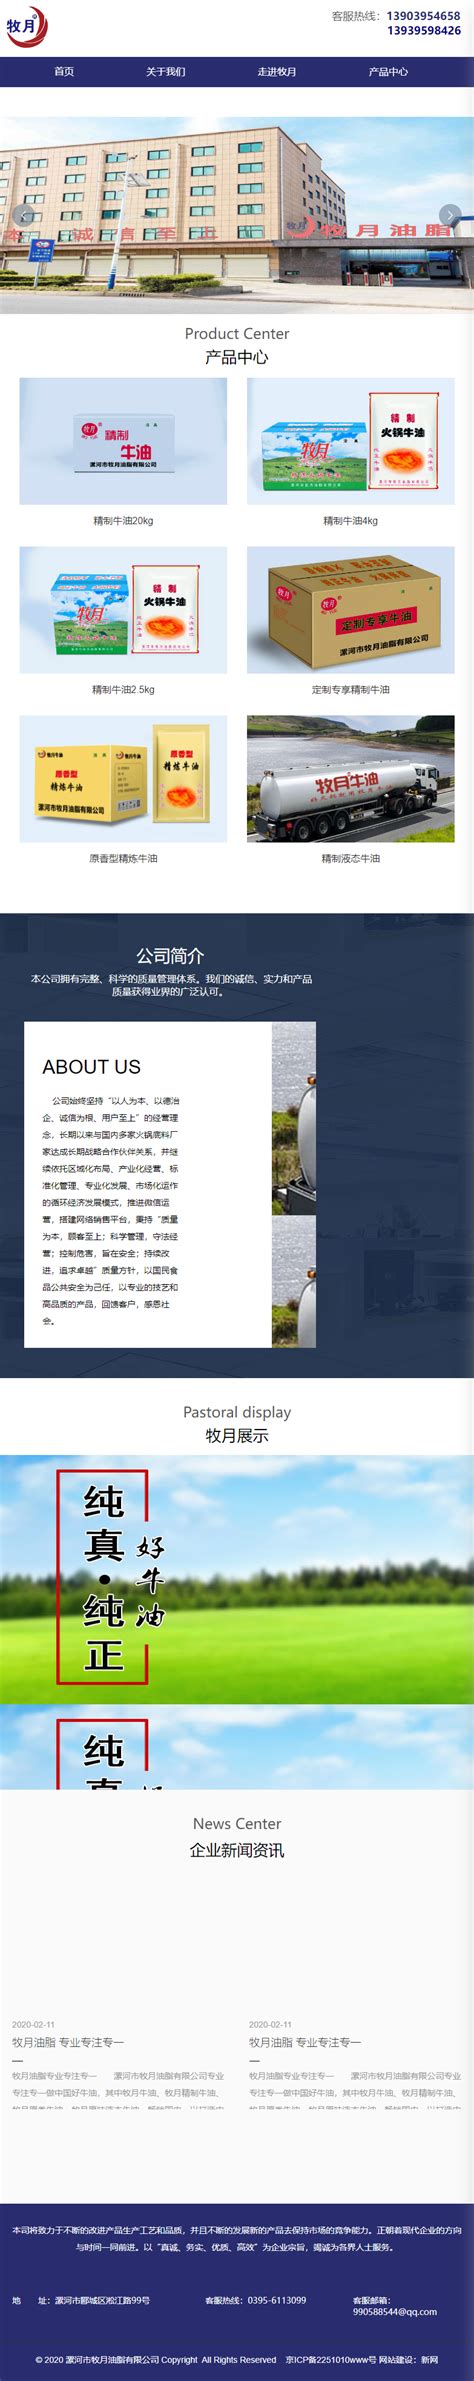 漯河品牌网站设计